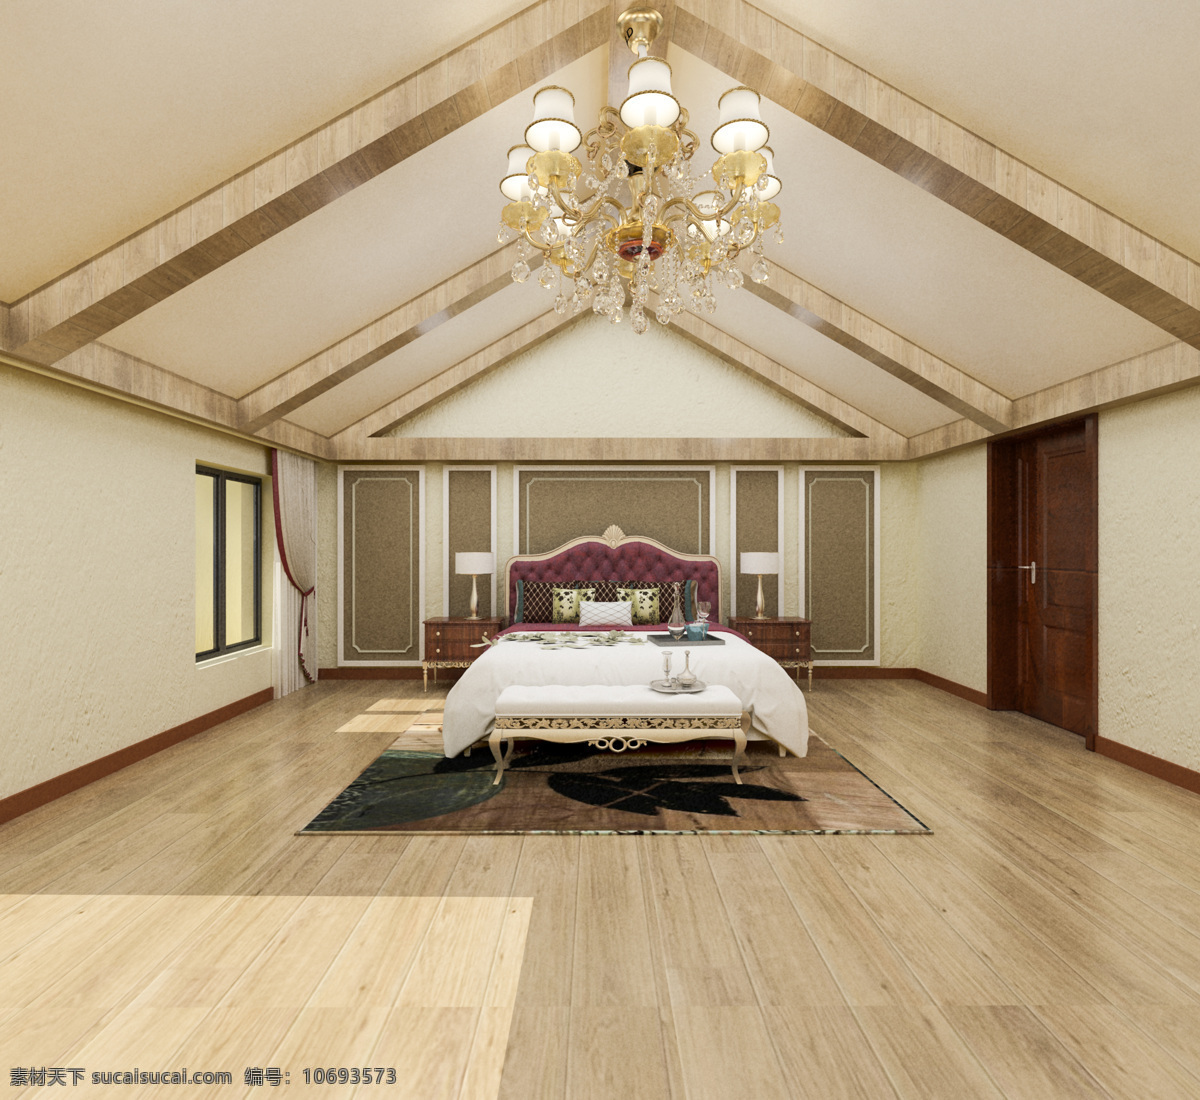 美式 卧室 效果图 模型 max 文件 max文件 欧式 卧室效果图